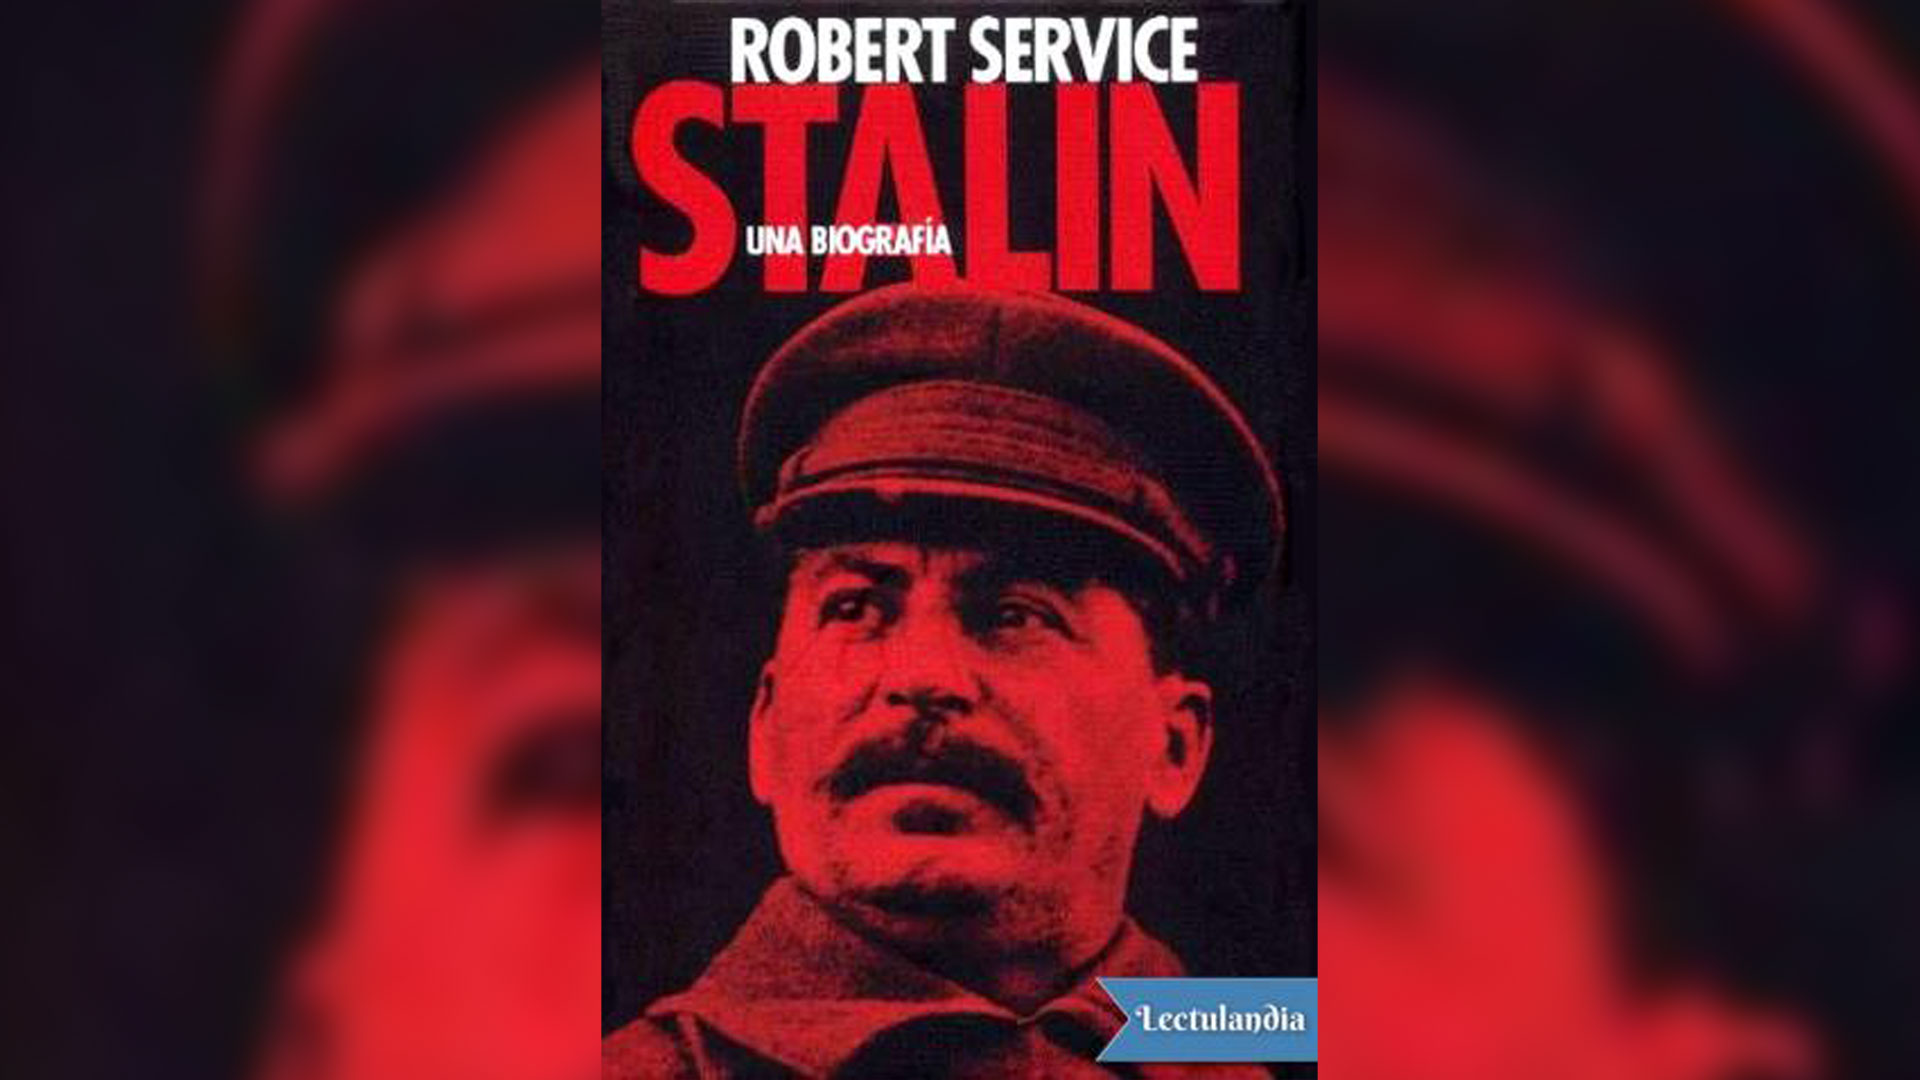 Robert Service. "Stalin, una biografía".